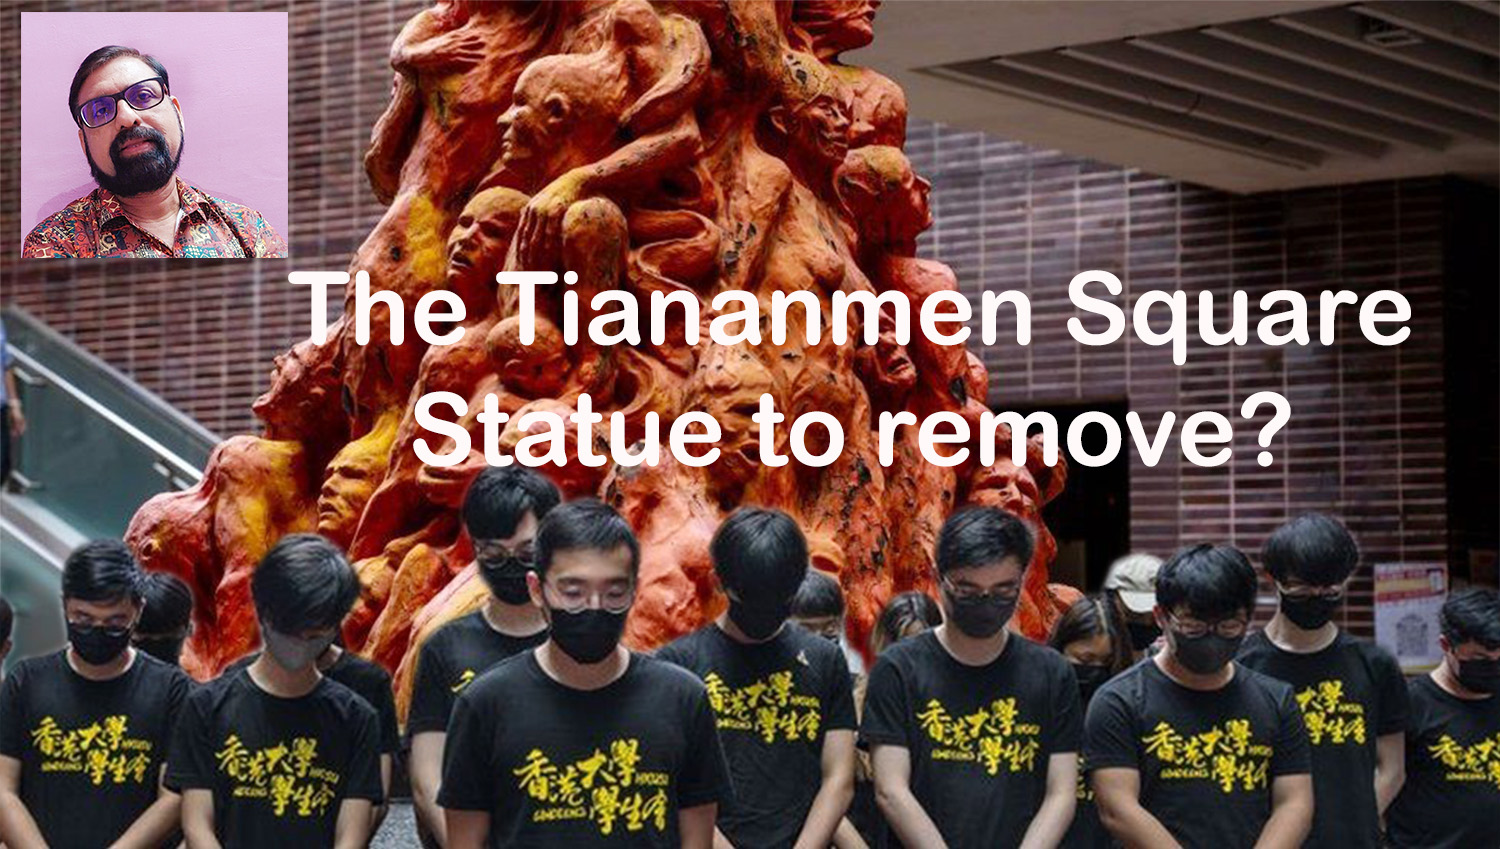 The Tiananmen Square Statue to remove?